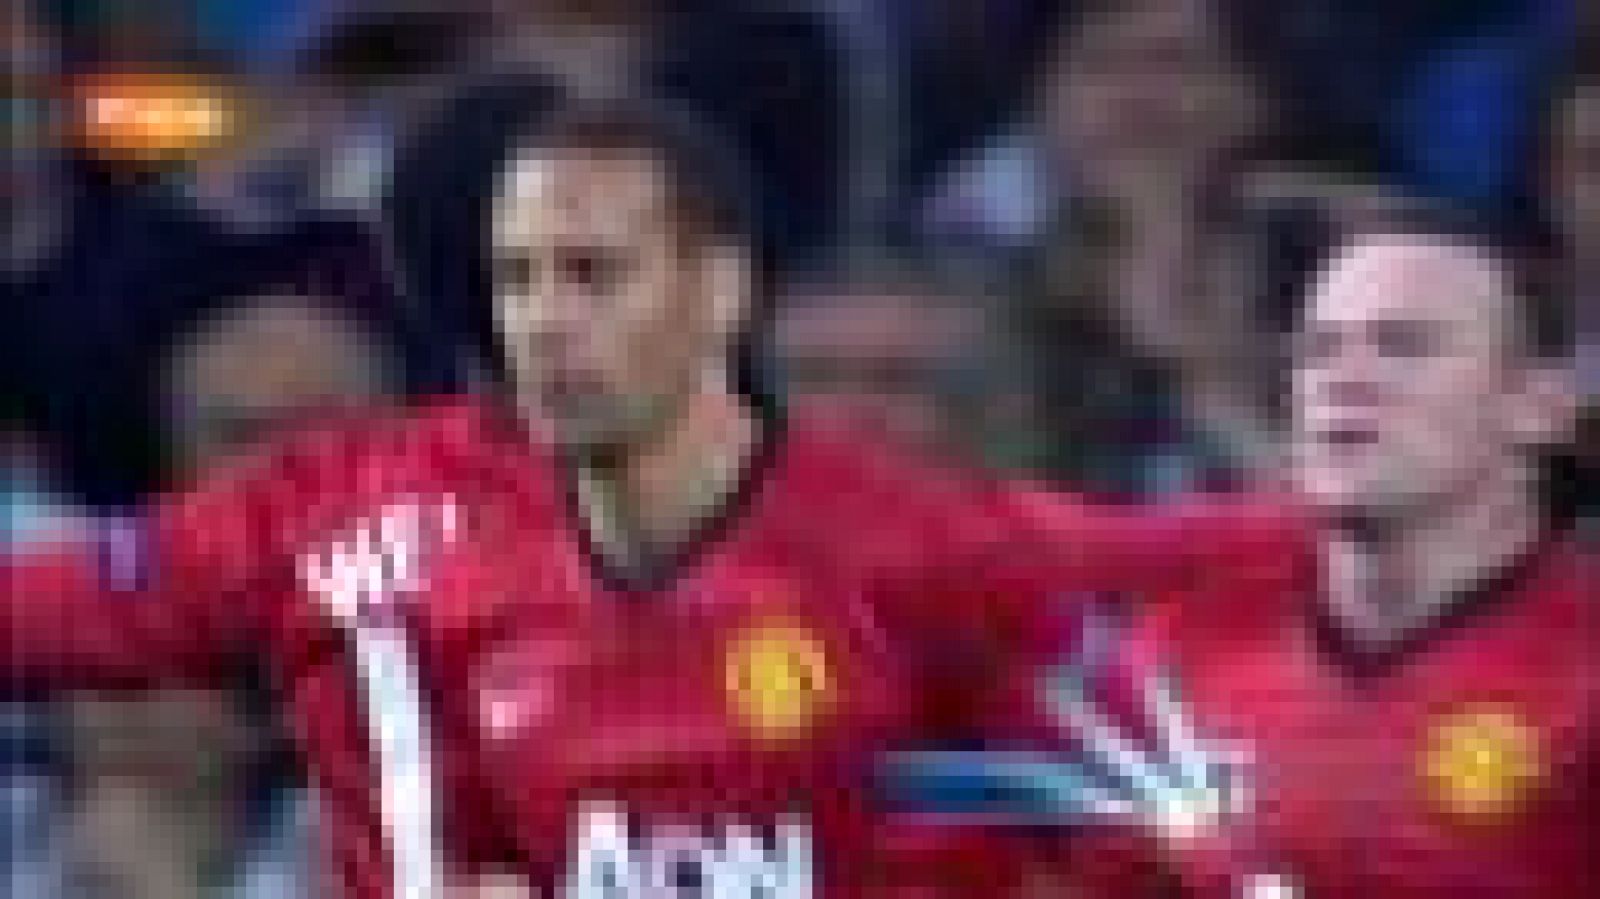  El jugador inglés Danny Welbeck ha adelantado al Manchester United con un gol de cabeza en el minuto 19 de juego. 